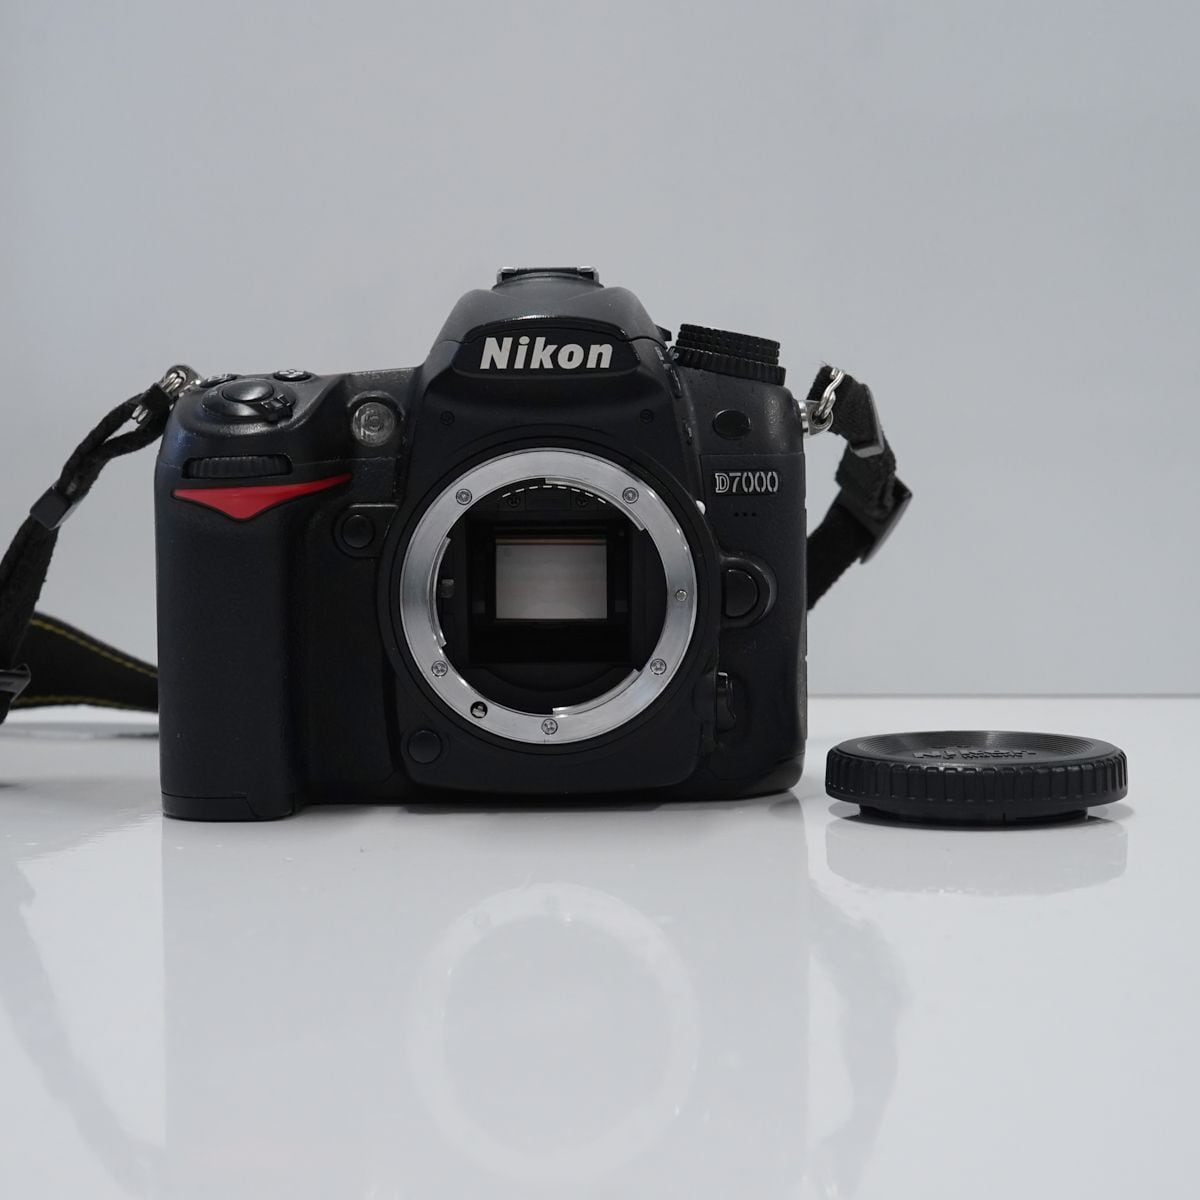 Nikon D7000 ボディ USED品 デジタル一眼 DX 本体+バッテリーのみ APS-C 完動品 中古 X4010 ウィット 鉄道忘れ物  販売 ブランド傘 カメラ イヤホン